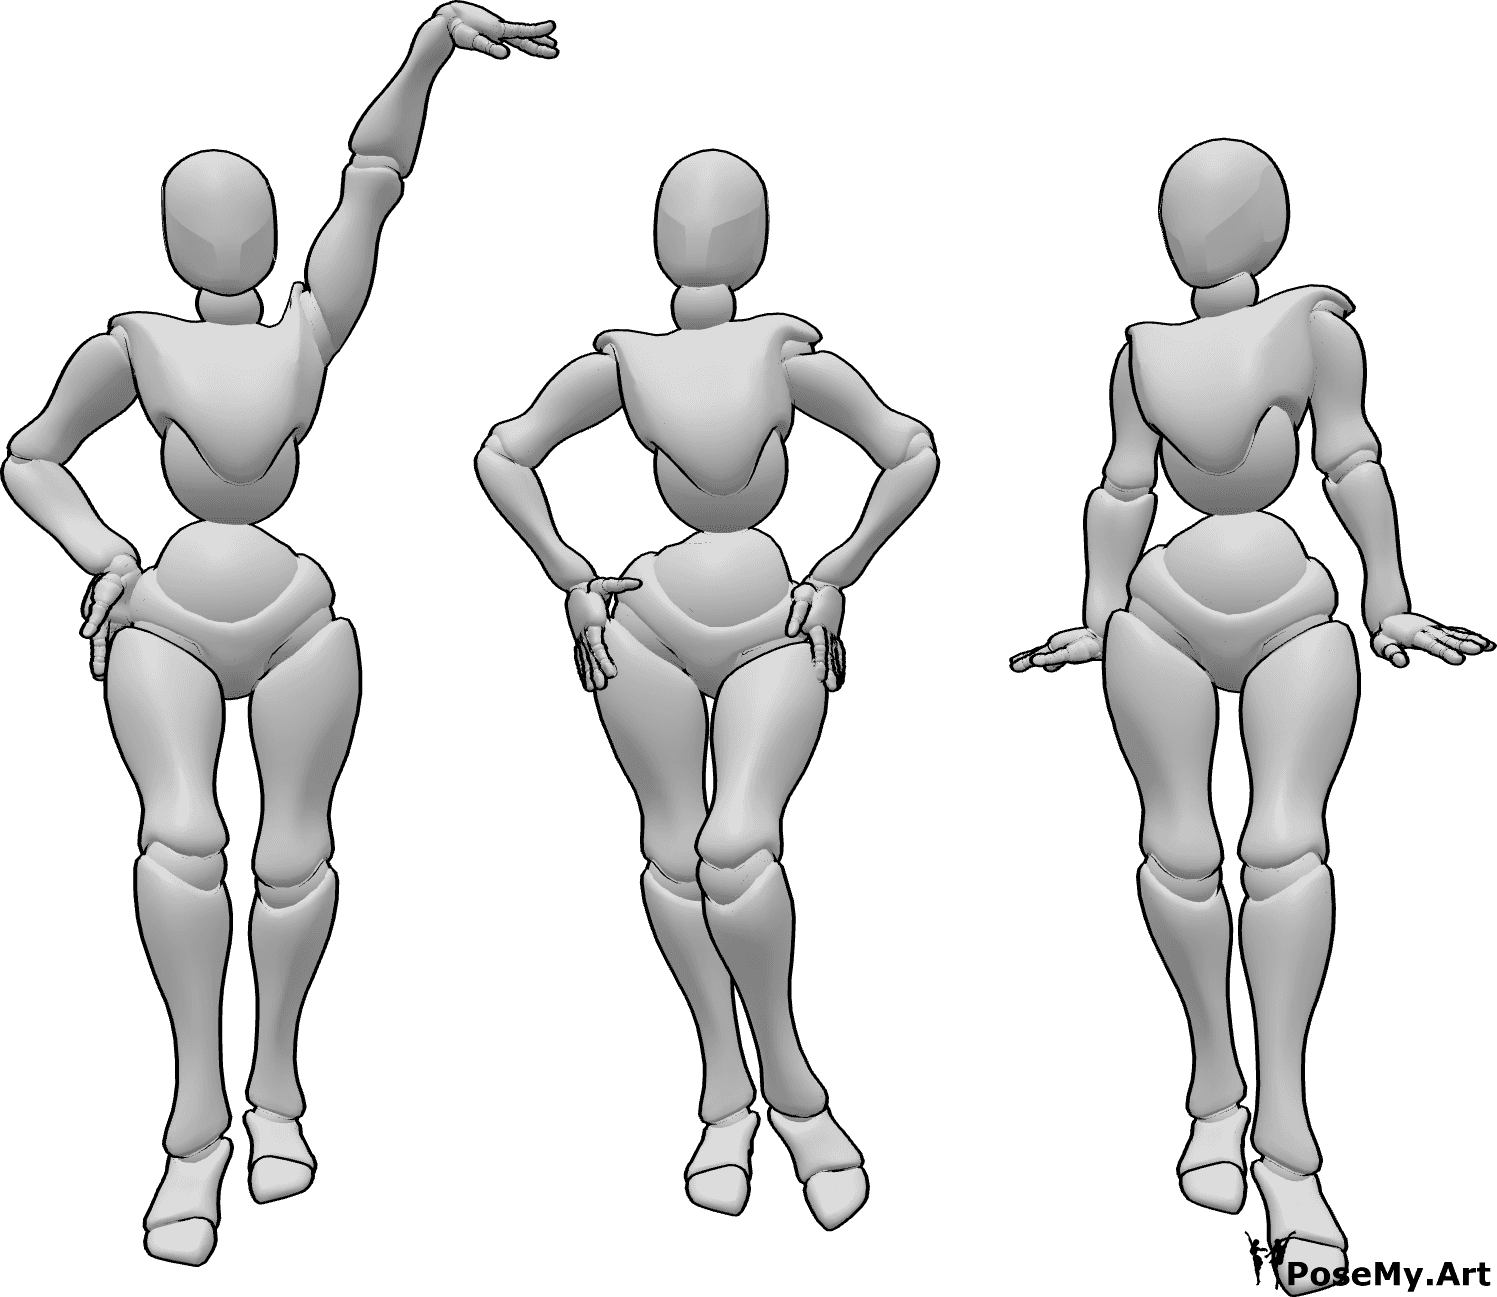 Referencia de poses- Tres mujeres de pie posan - Tres mujeres están de pie y posando como modelos